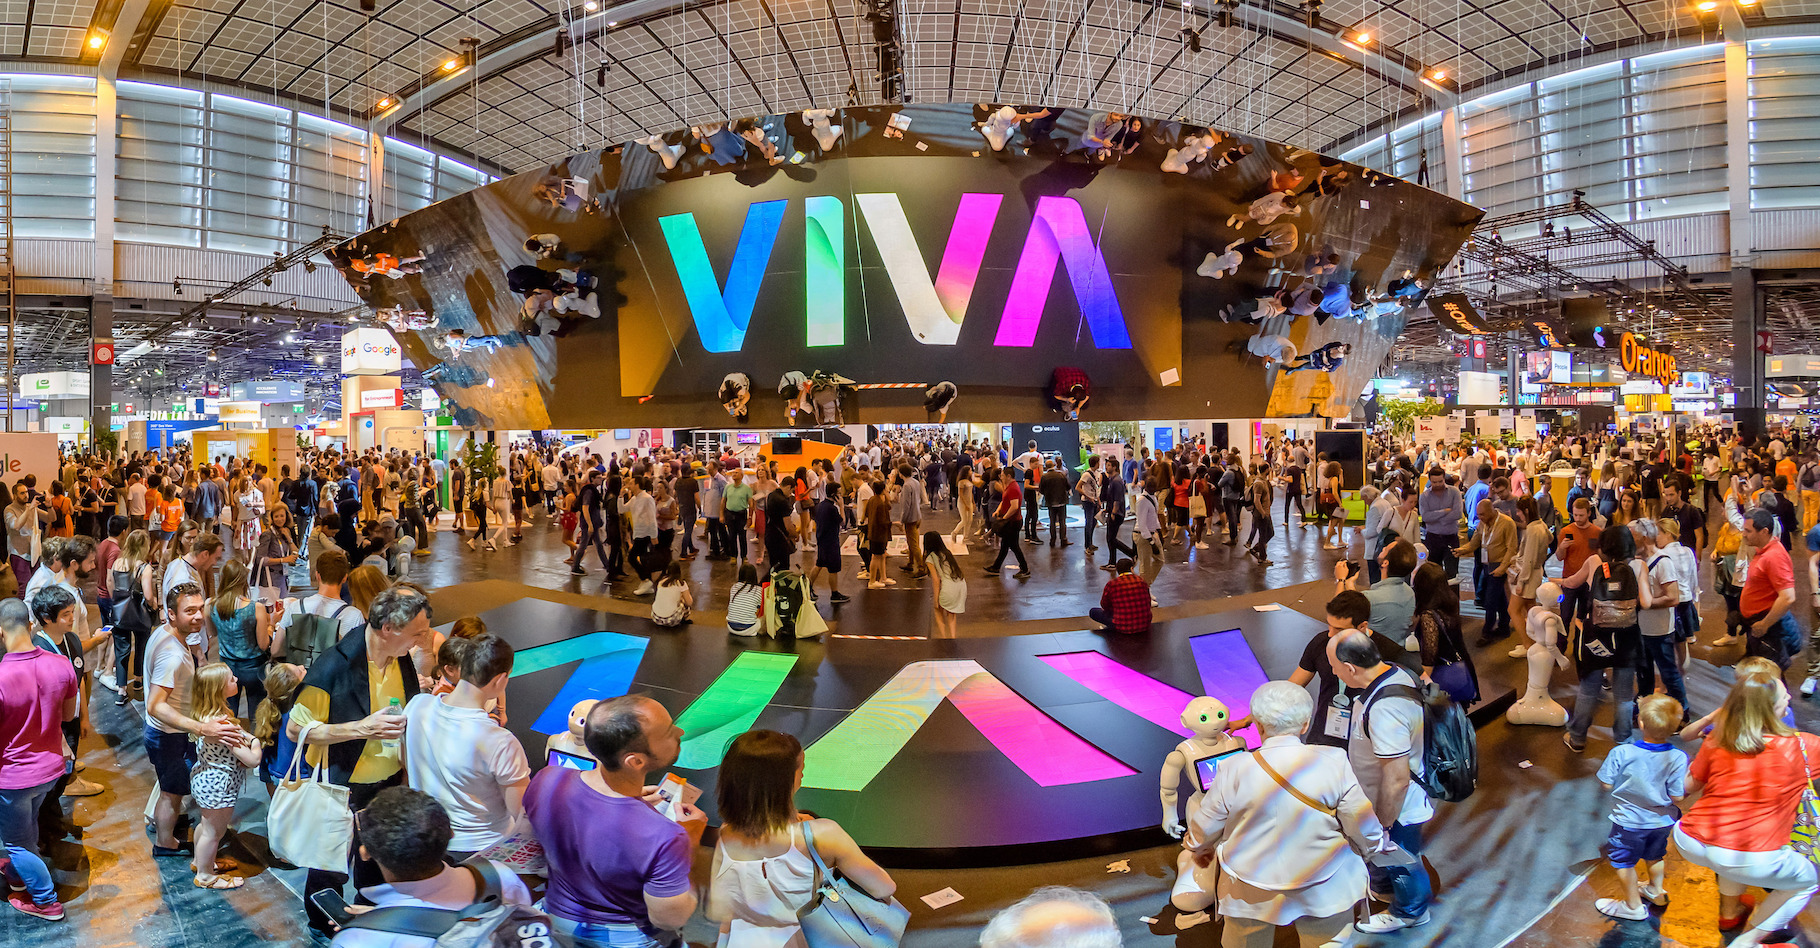 L’édition 2019 de VivaTechnology se tiendra à Paris du 16 au 18 mai. En 2018, ce salon de l’innovation avait attiré plus de 100.000 participants. © Sipa VivaTechnology 